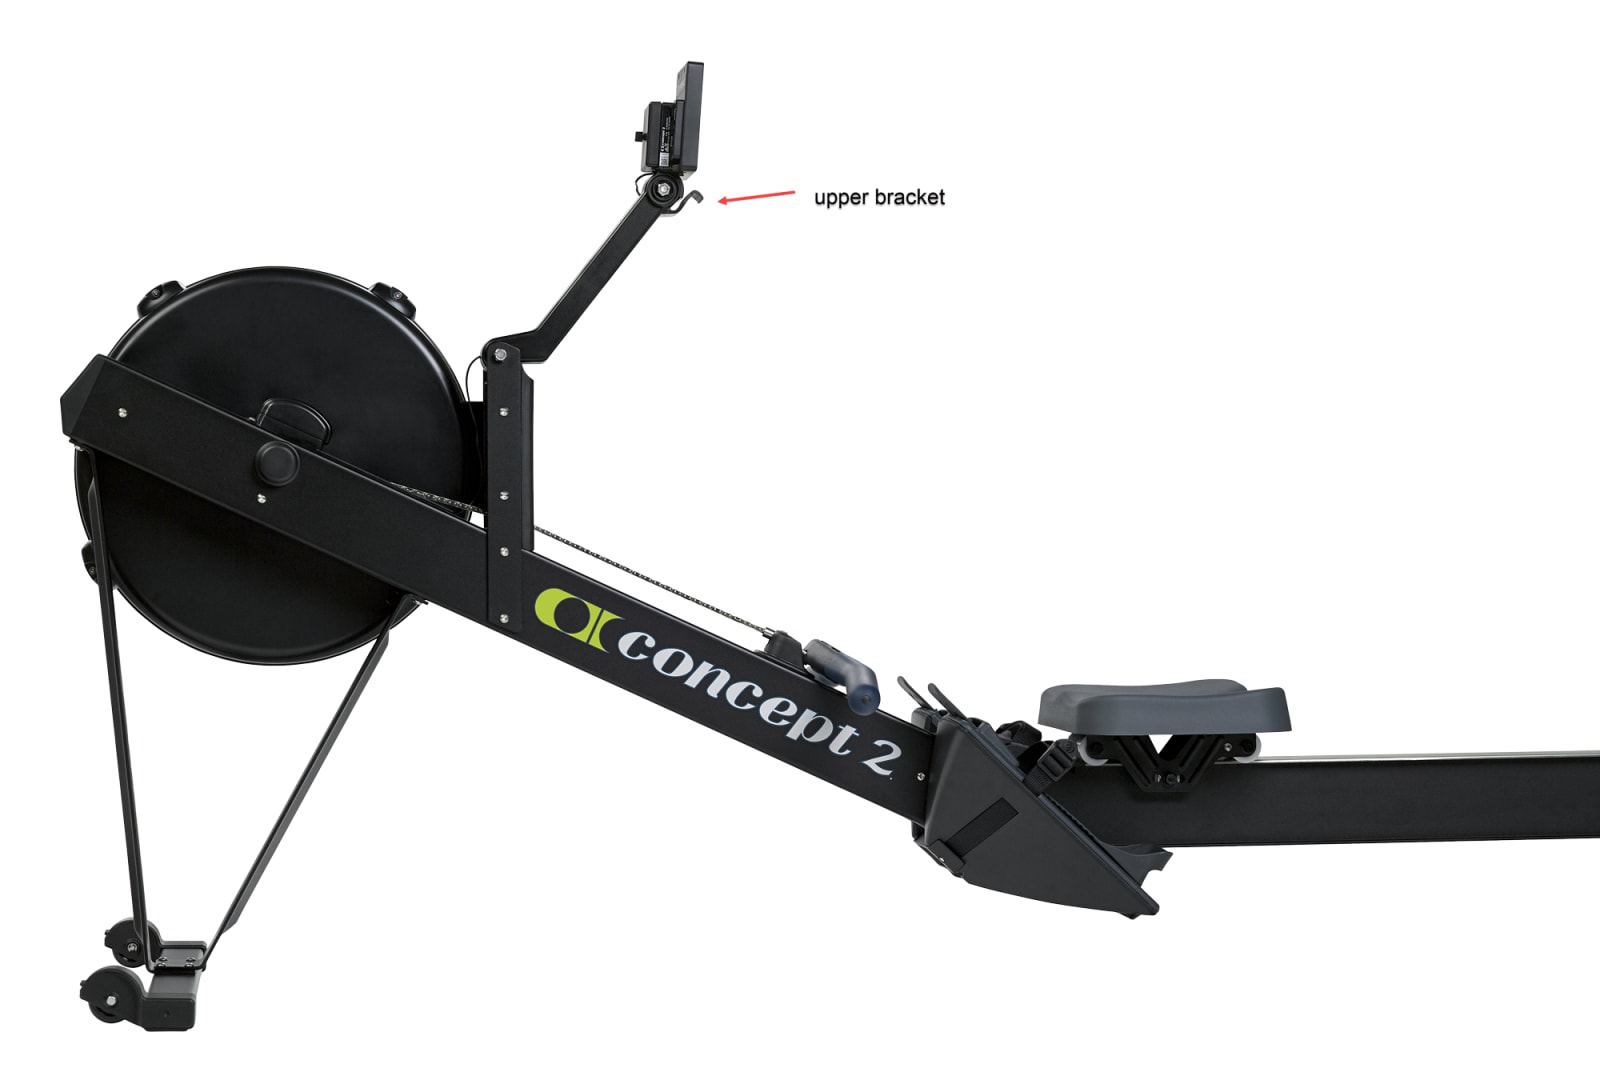 Concept2 - Indoor Rowing Machine Model RowErg (Standard) – JNB Fitness